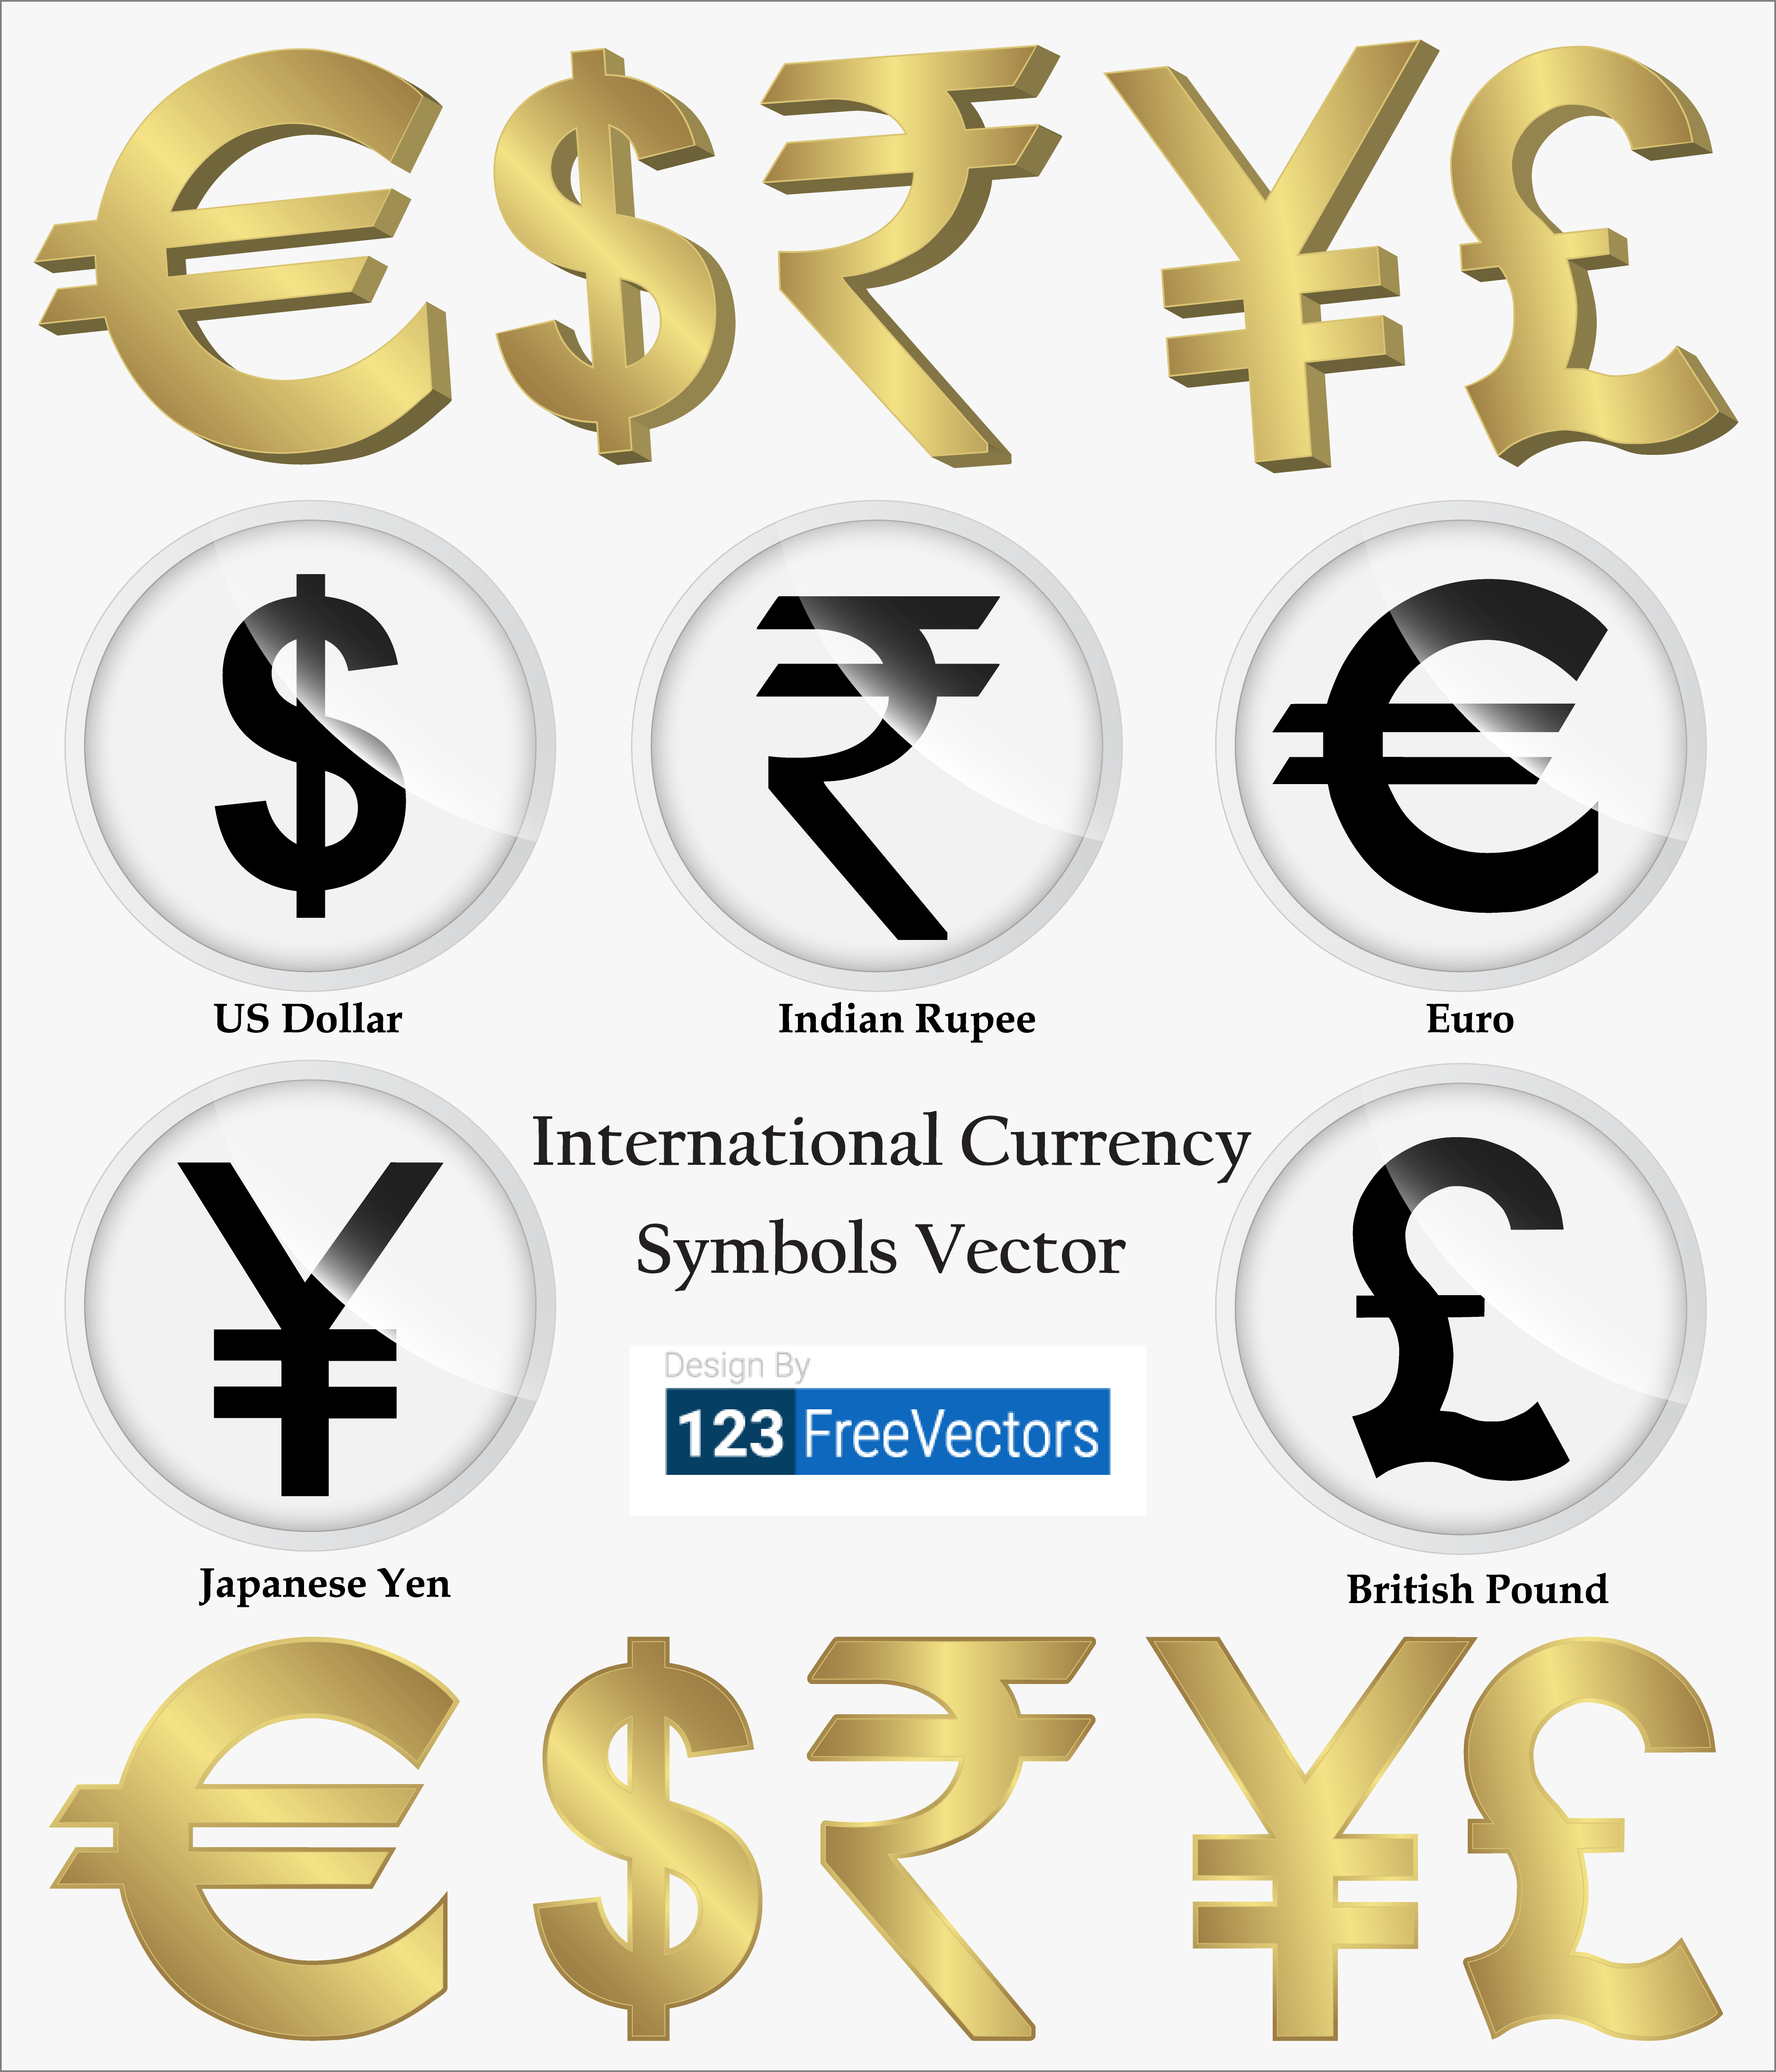 Первая валюта в обозначении валютной